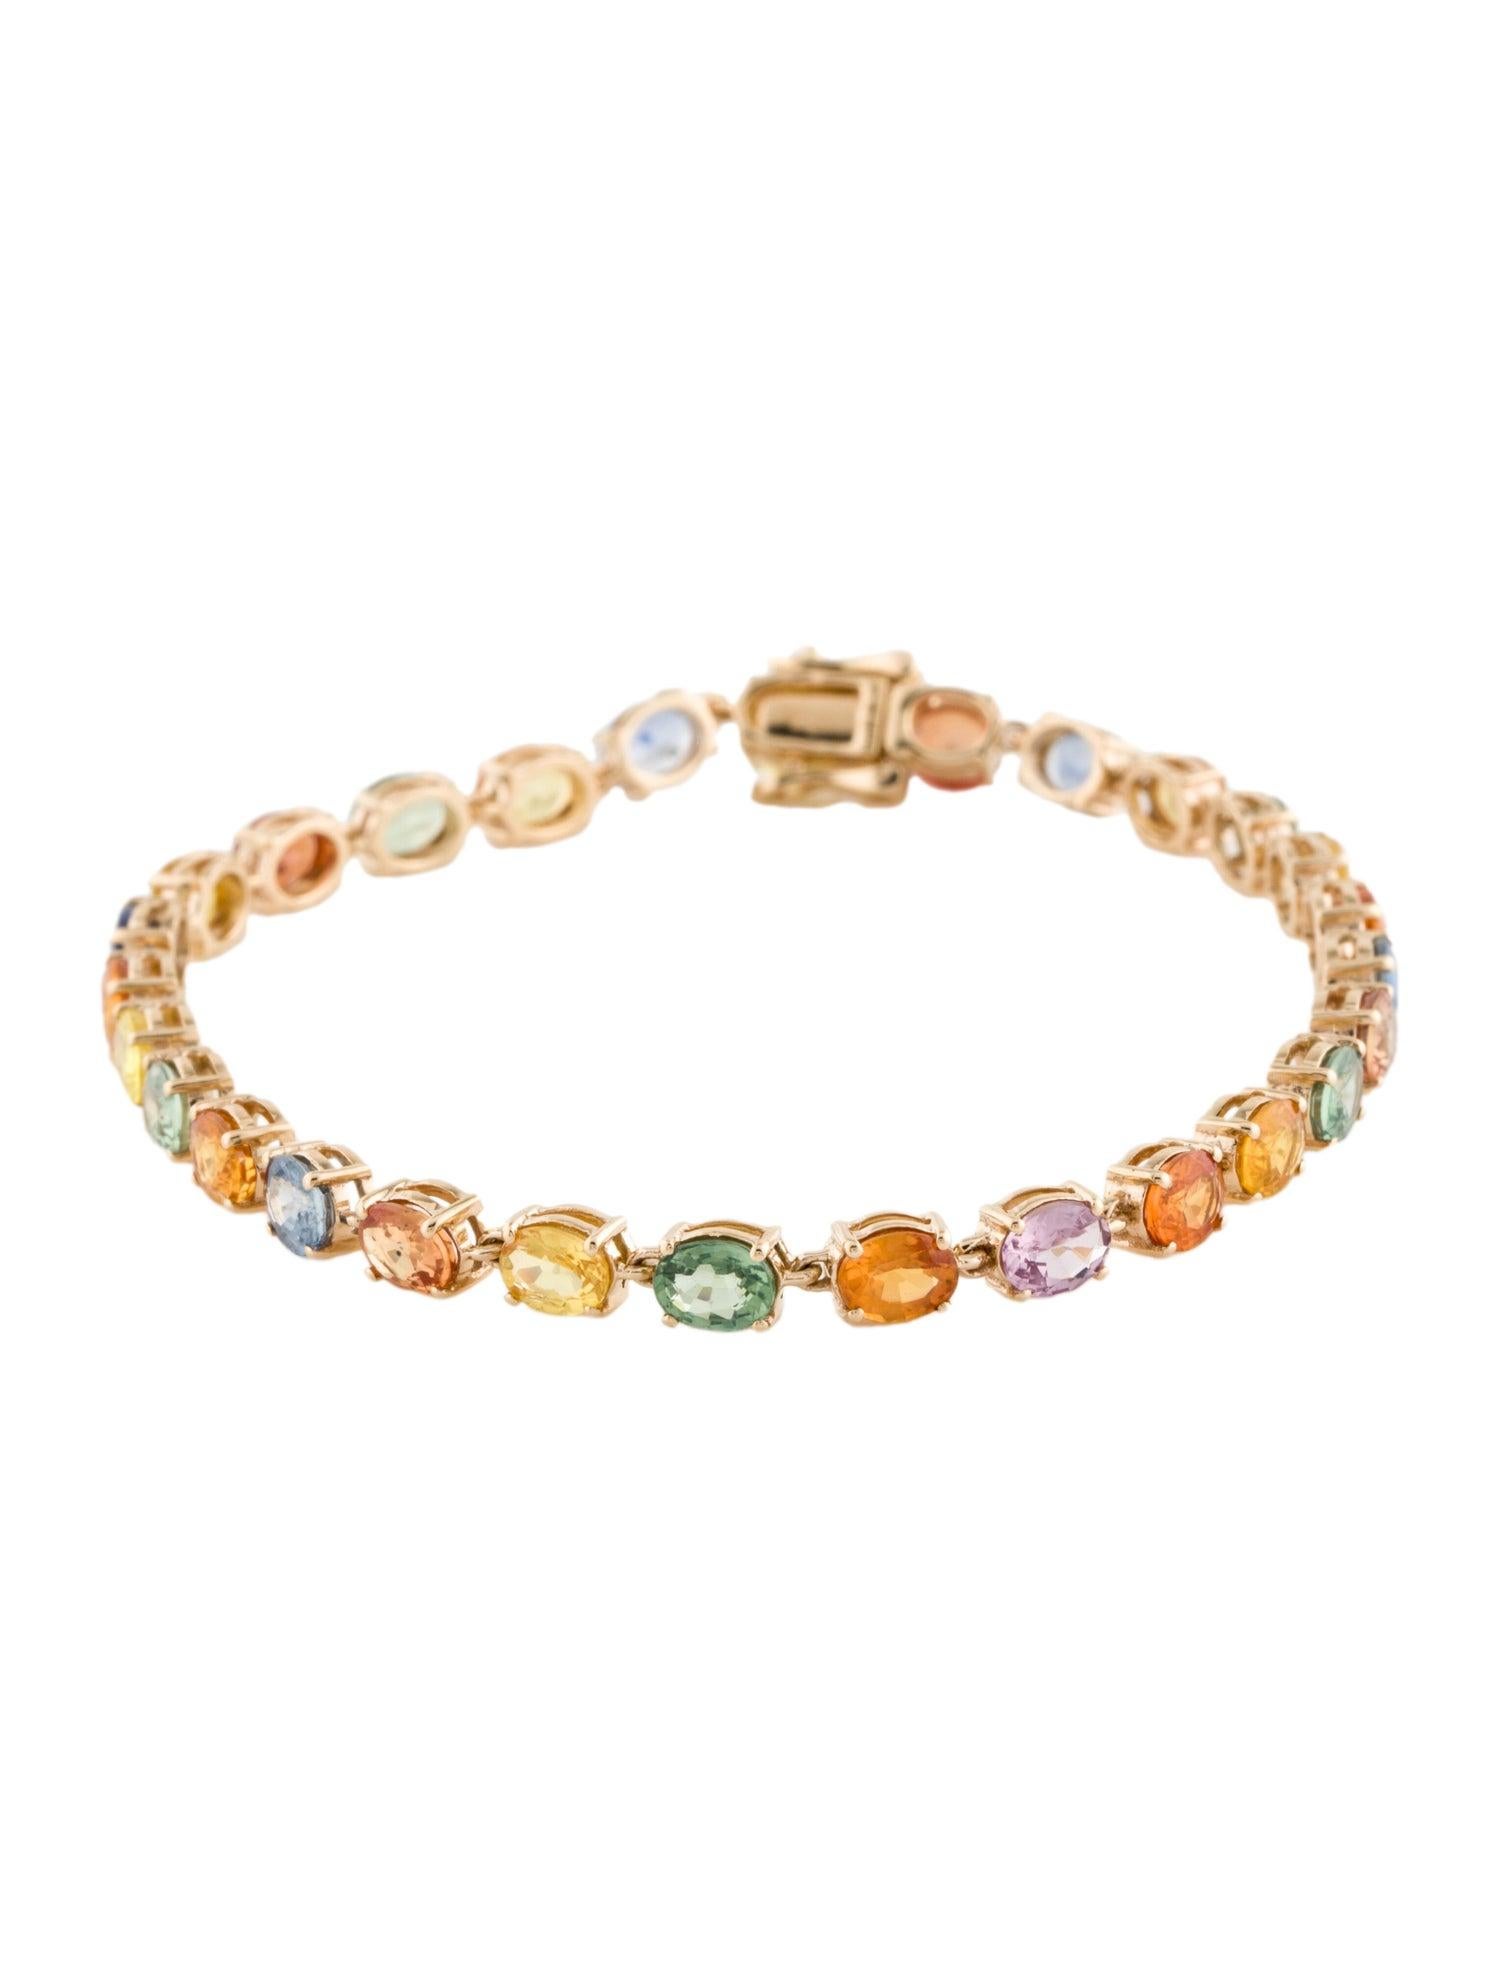 Le bracelet Rainbow Symphony Multi Sapphire de Jeweltique rehausse votre poignet d'une beauté à couper le souffle. Cette pièce exquise est une célébration des saphirs multicolores et vibrants qui dansent ensemble en parfaite harmonie, rappelant les